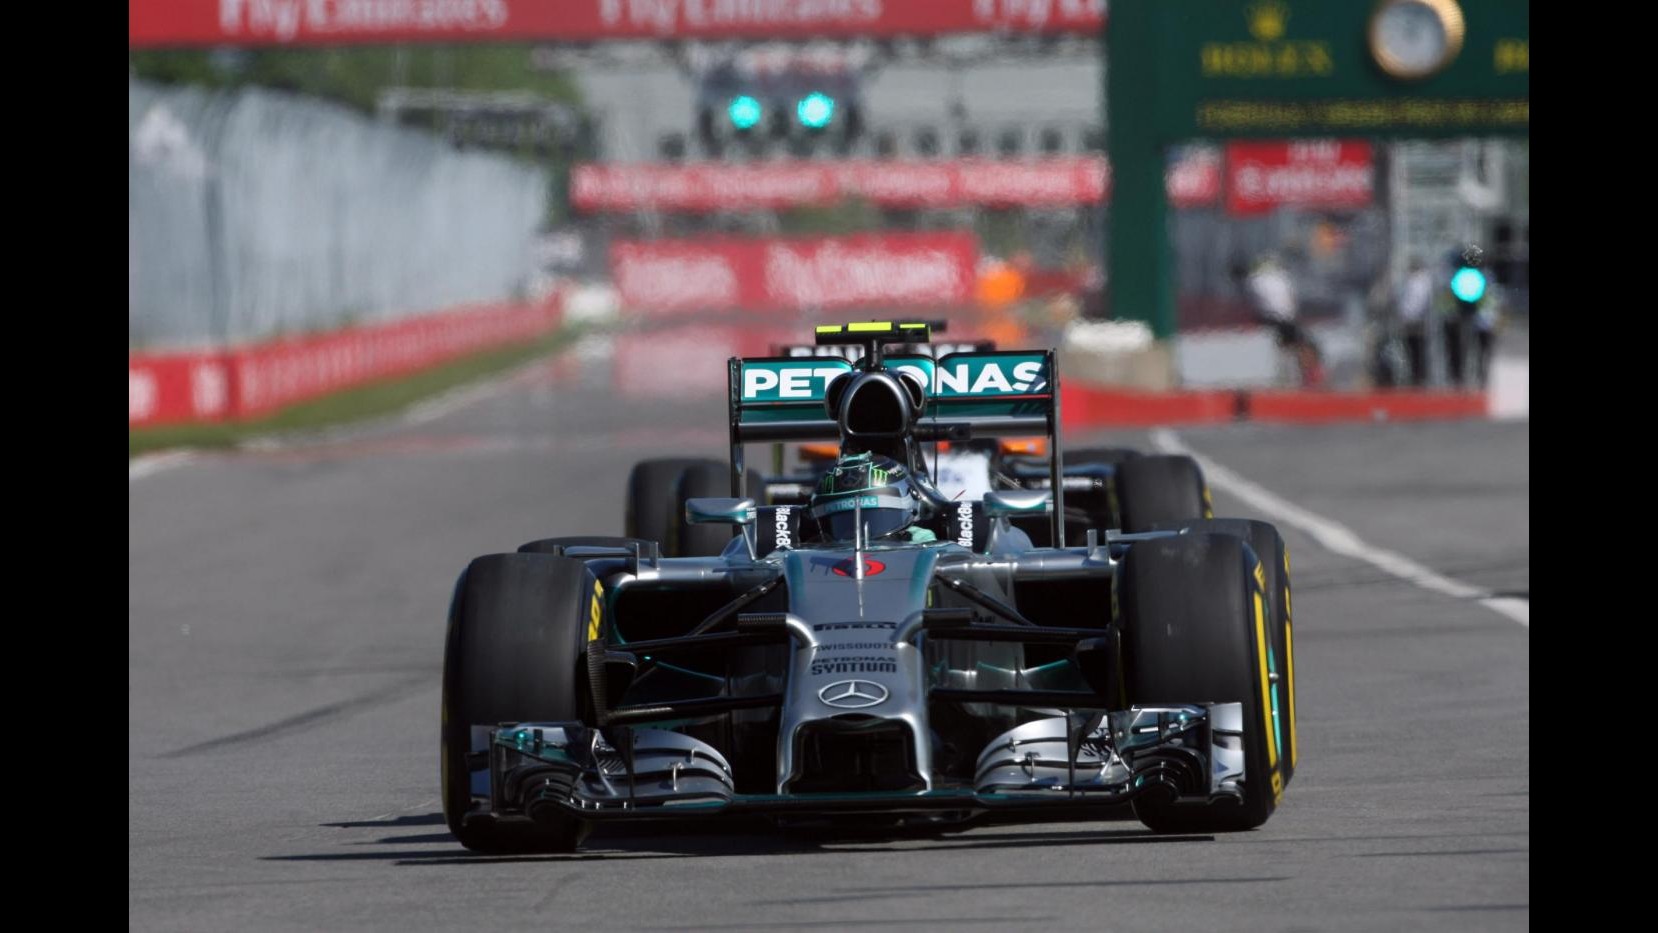 F1, Gp Canada: Rosberg in pole davanti a Hamilton, terzo Vettel. Alonso 7°, Raikkonen 10°